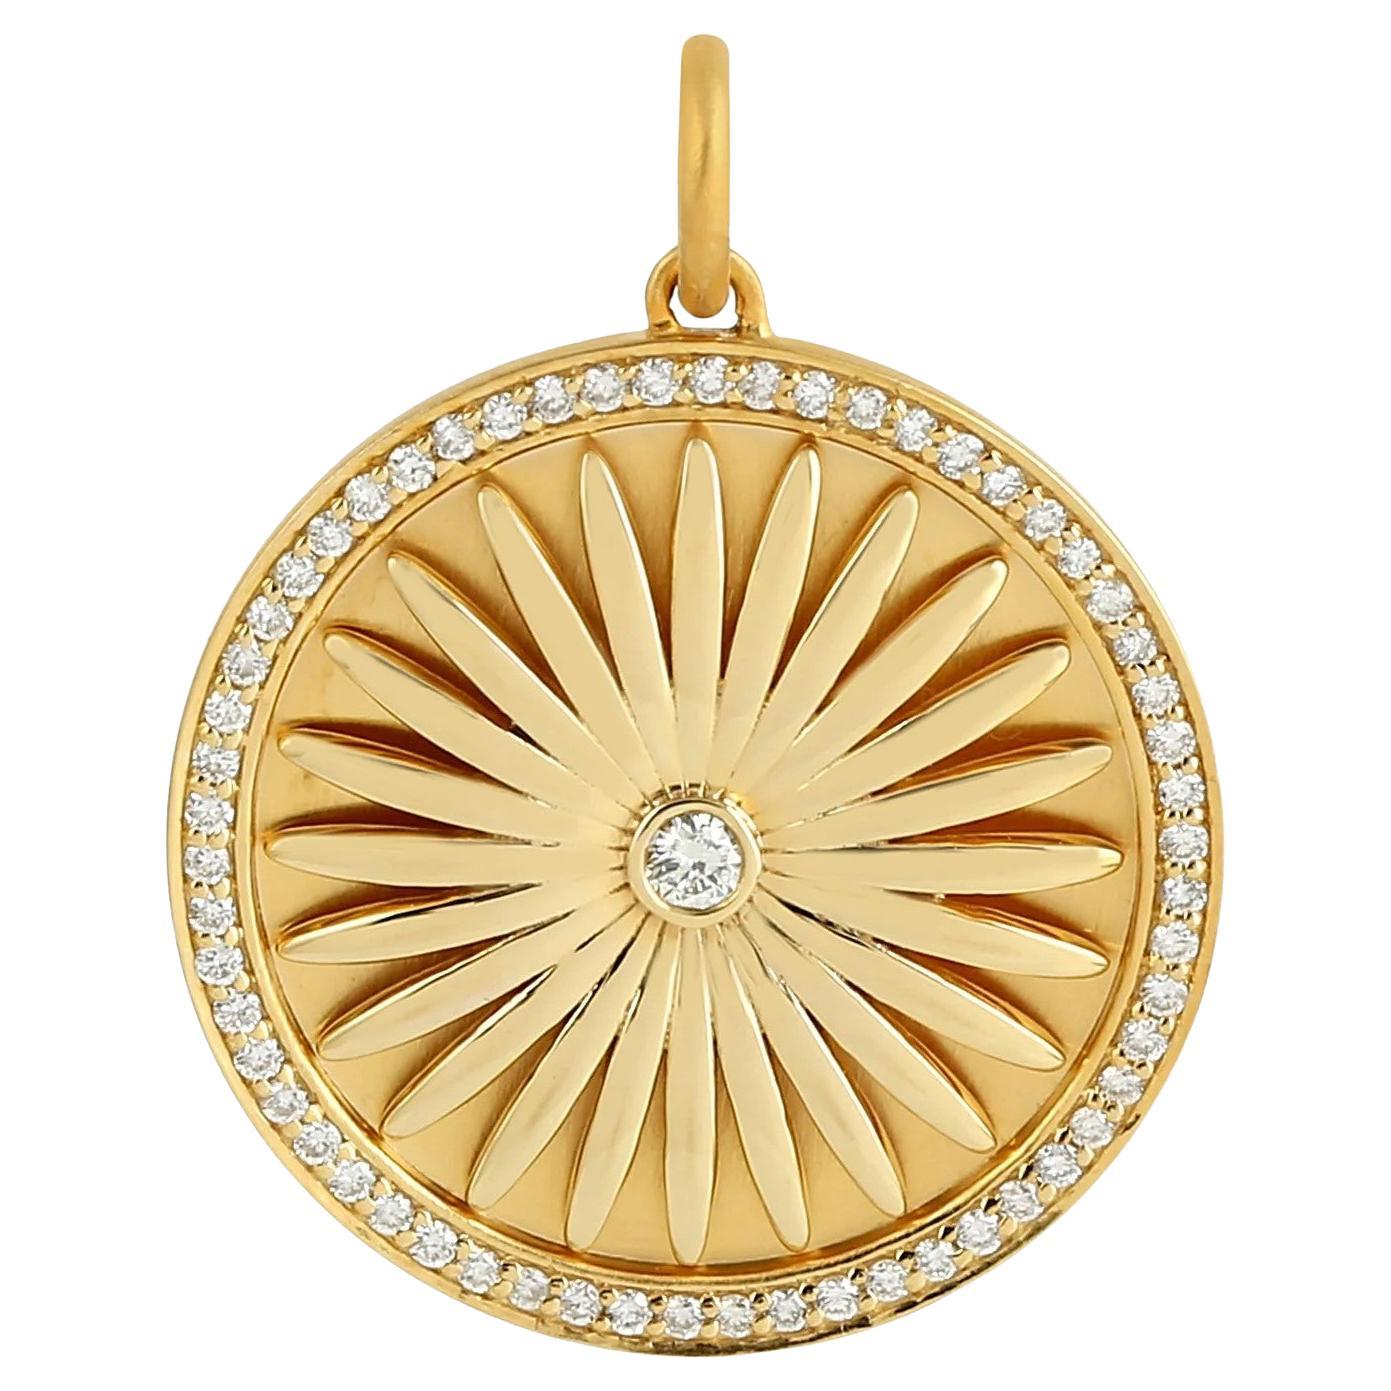 Meghna Jewels, collier pendentif breloque fleur de marguerite en or 14 carats et diamants